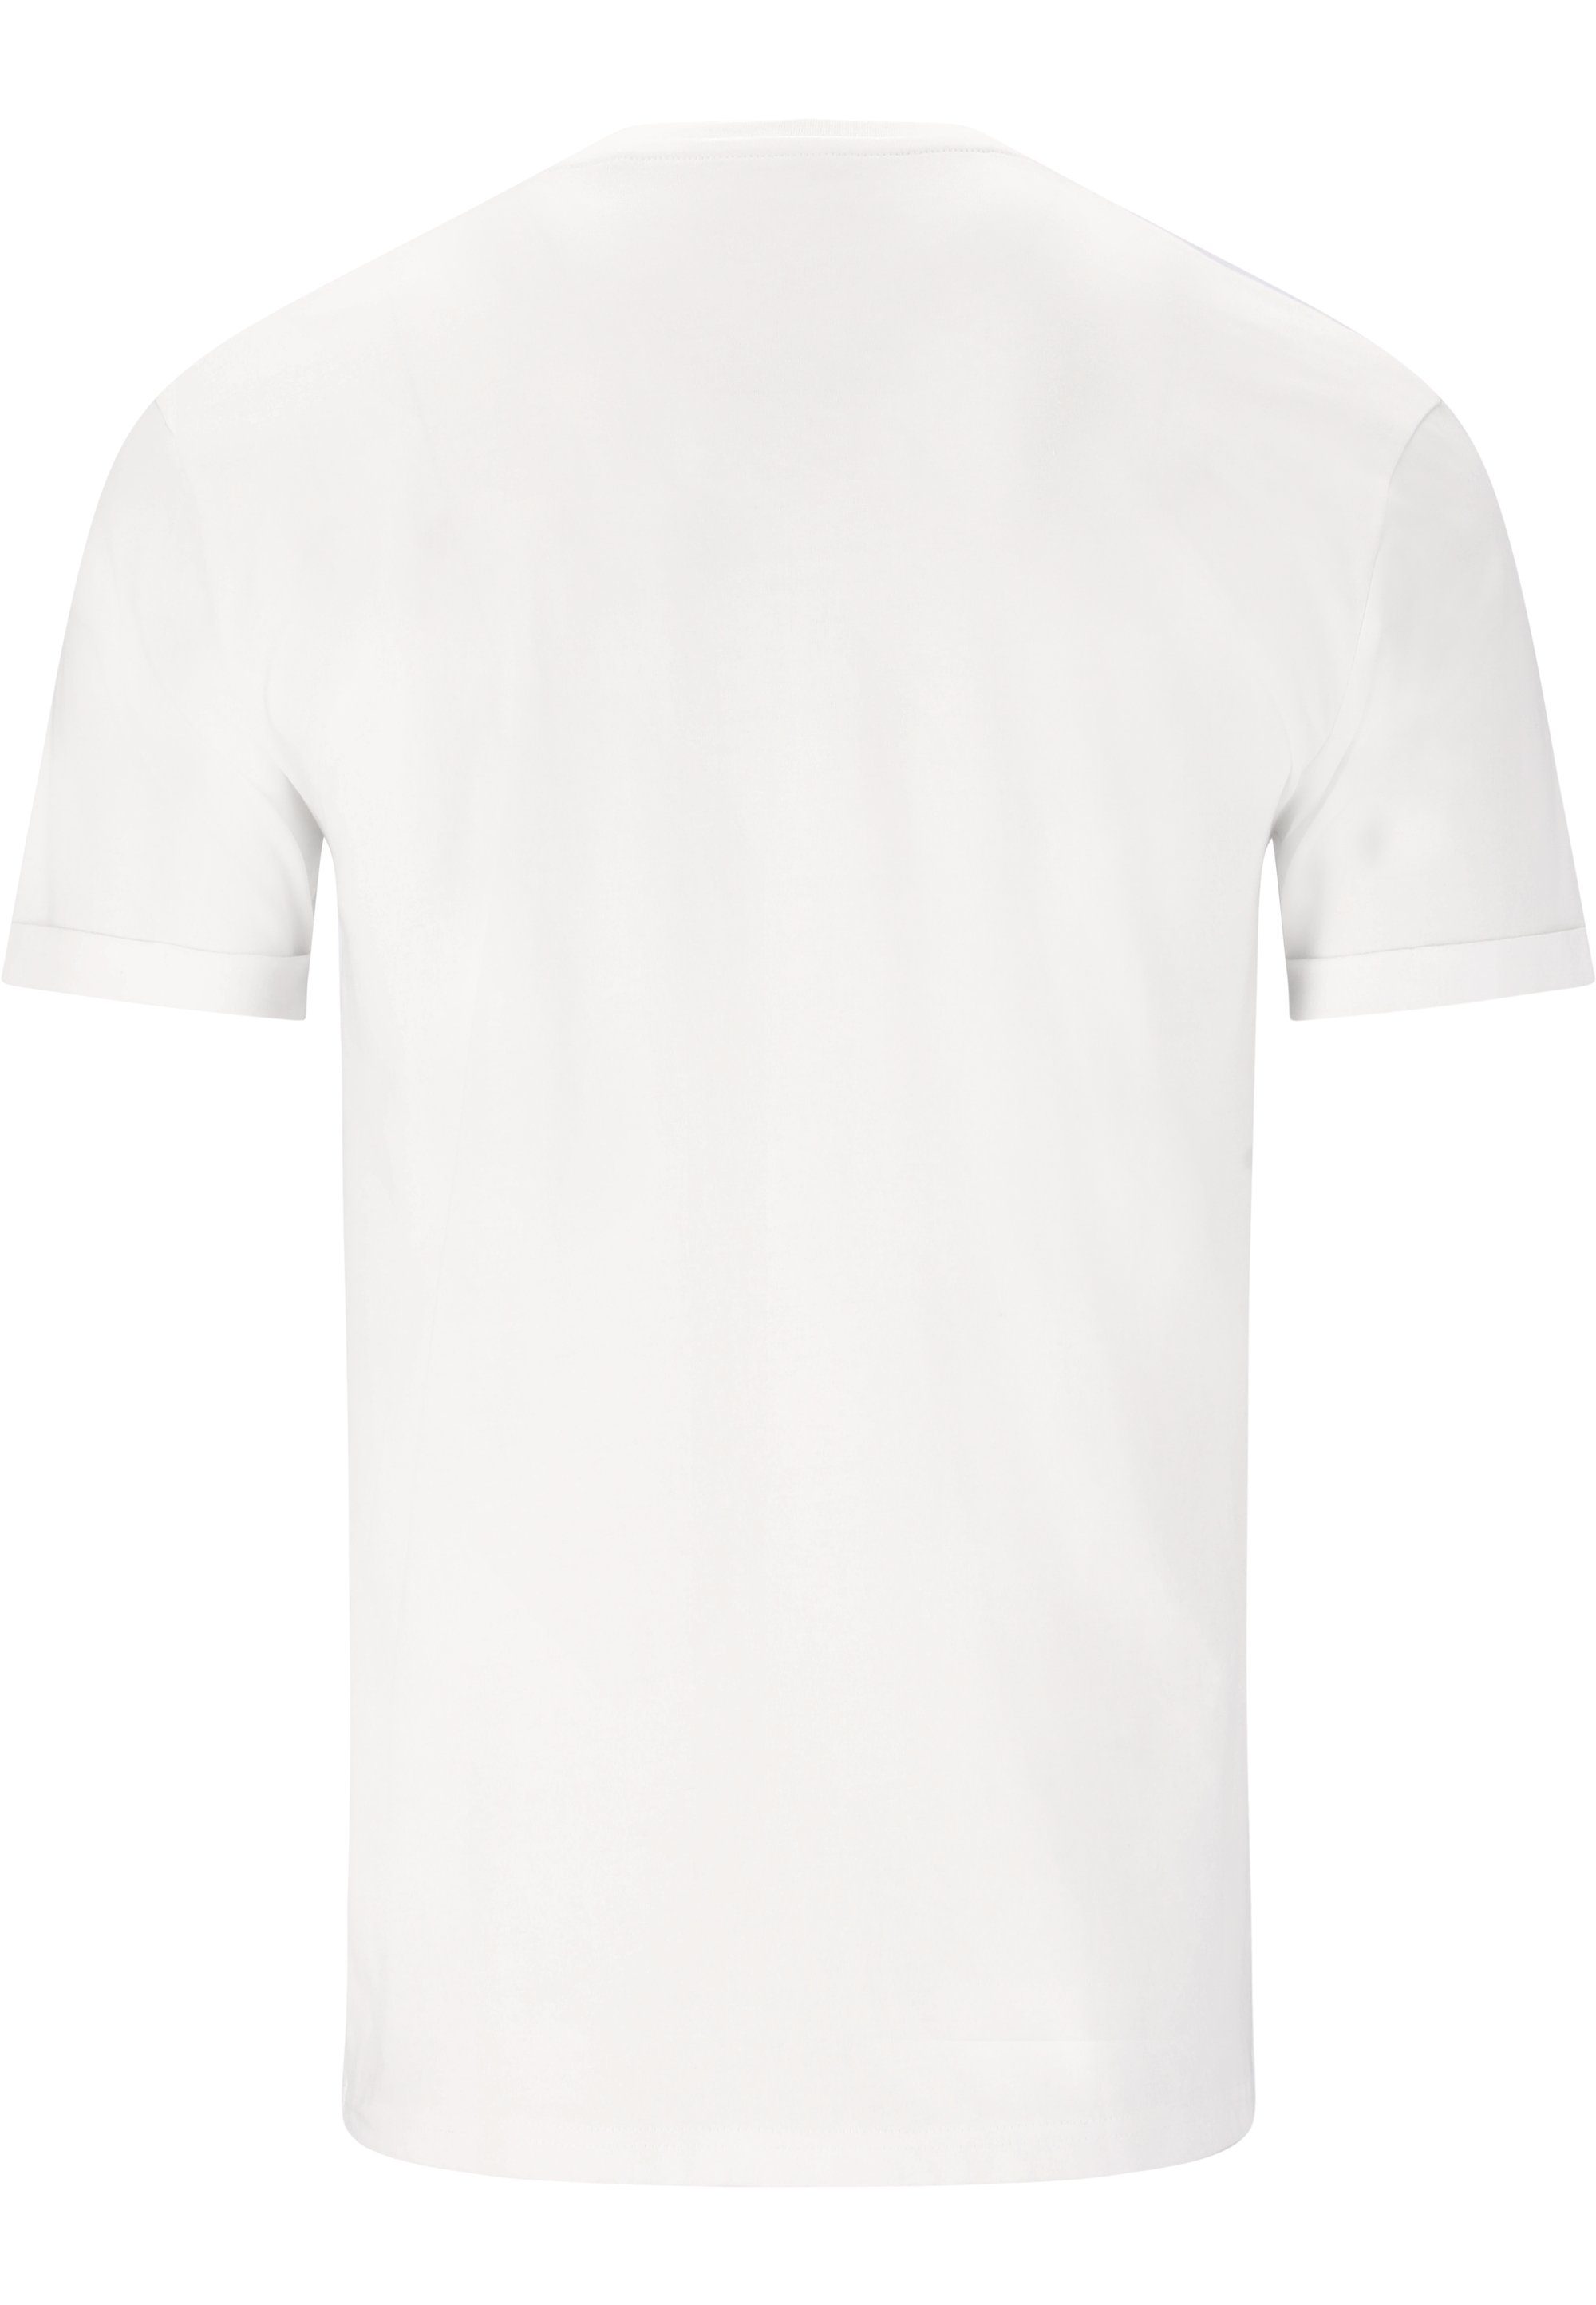 CRUZ T-Shirt Flemming mit stylischem Print weiß